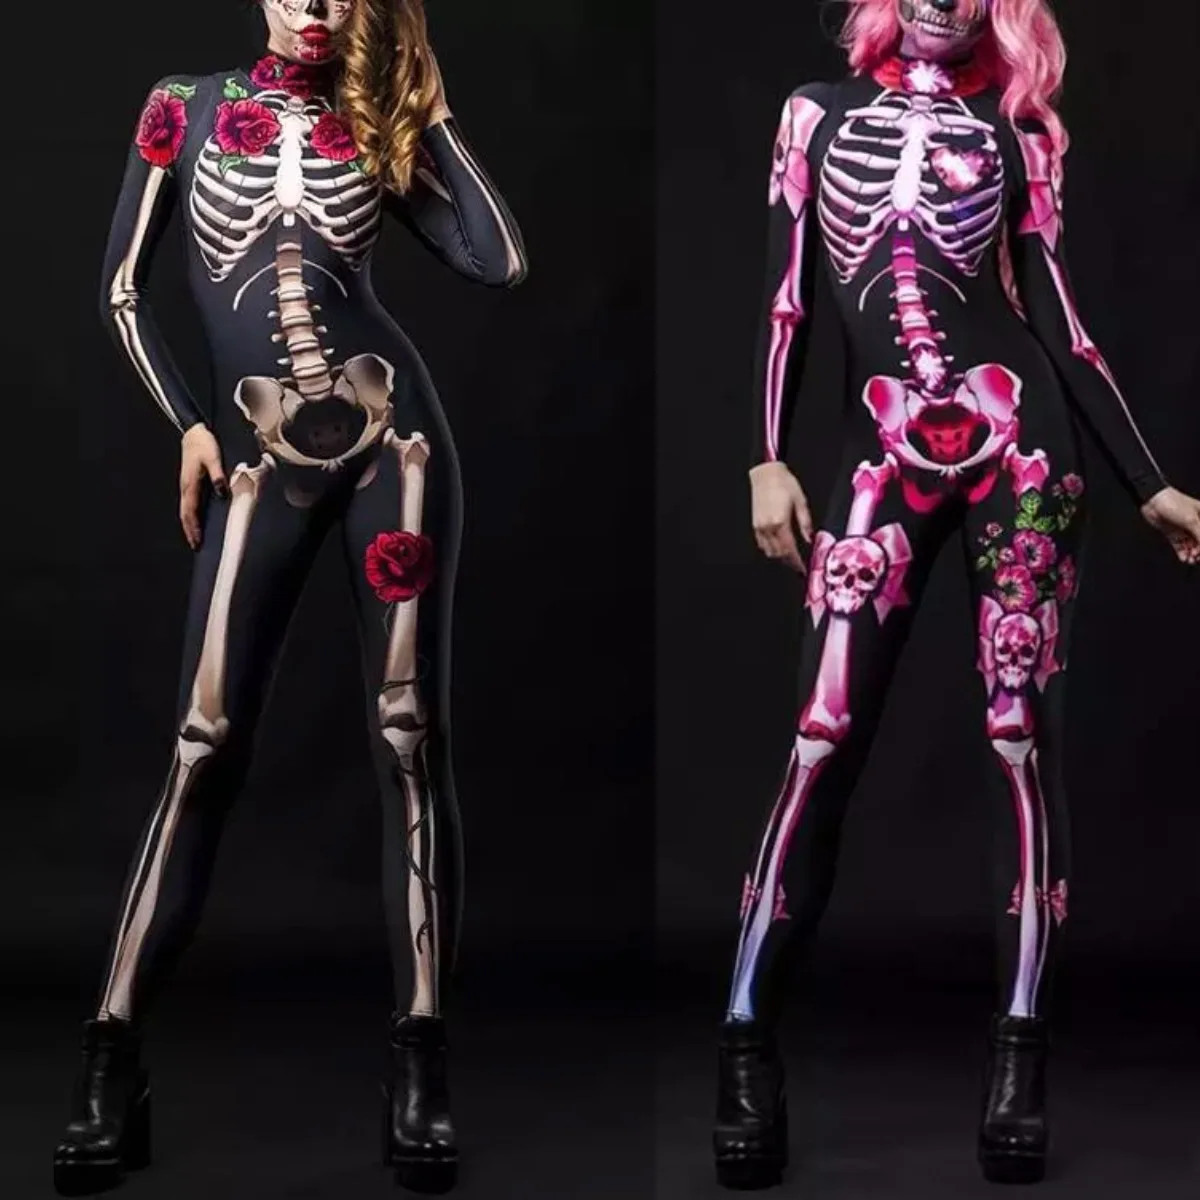 Costume di Halloween donne Sexy Costume fantasma spaventoso scheletro di rosa tuta da diavolo Sexy bambini neonata festa di carnevale giorno dei morti